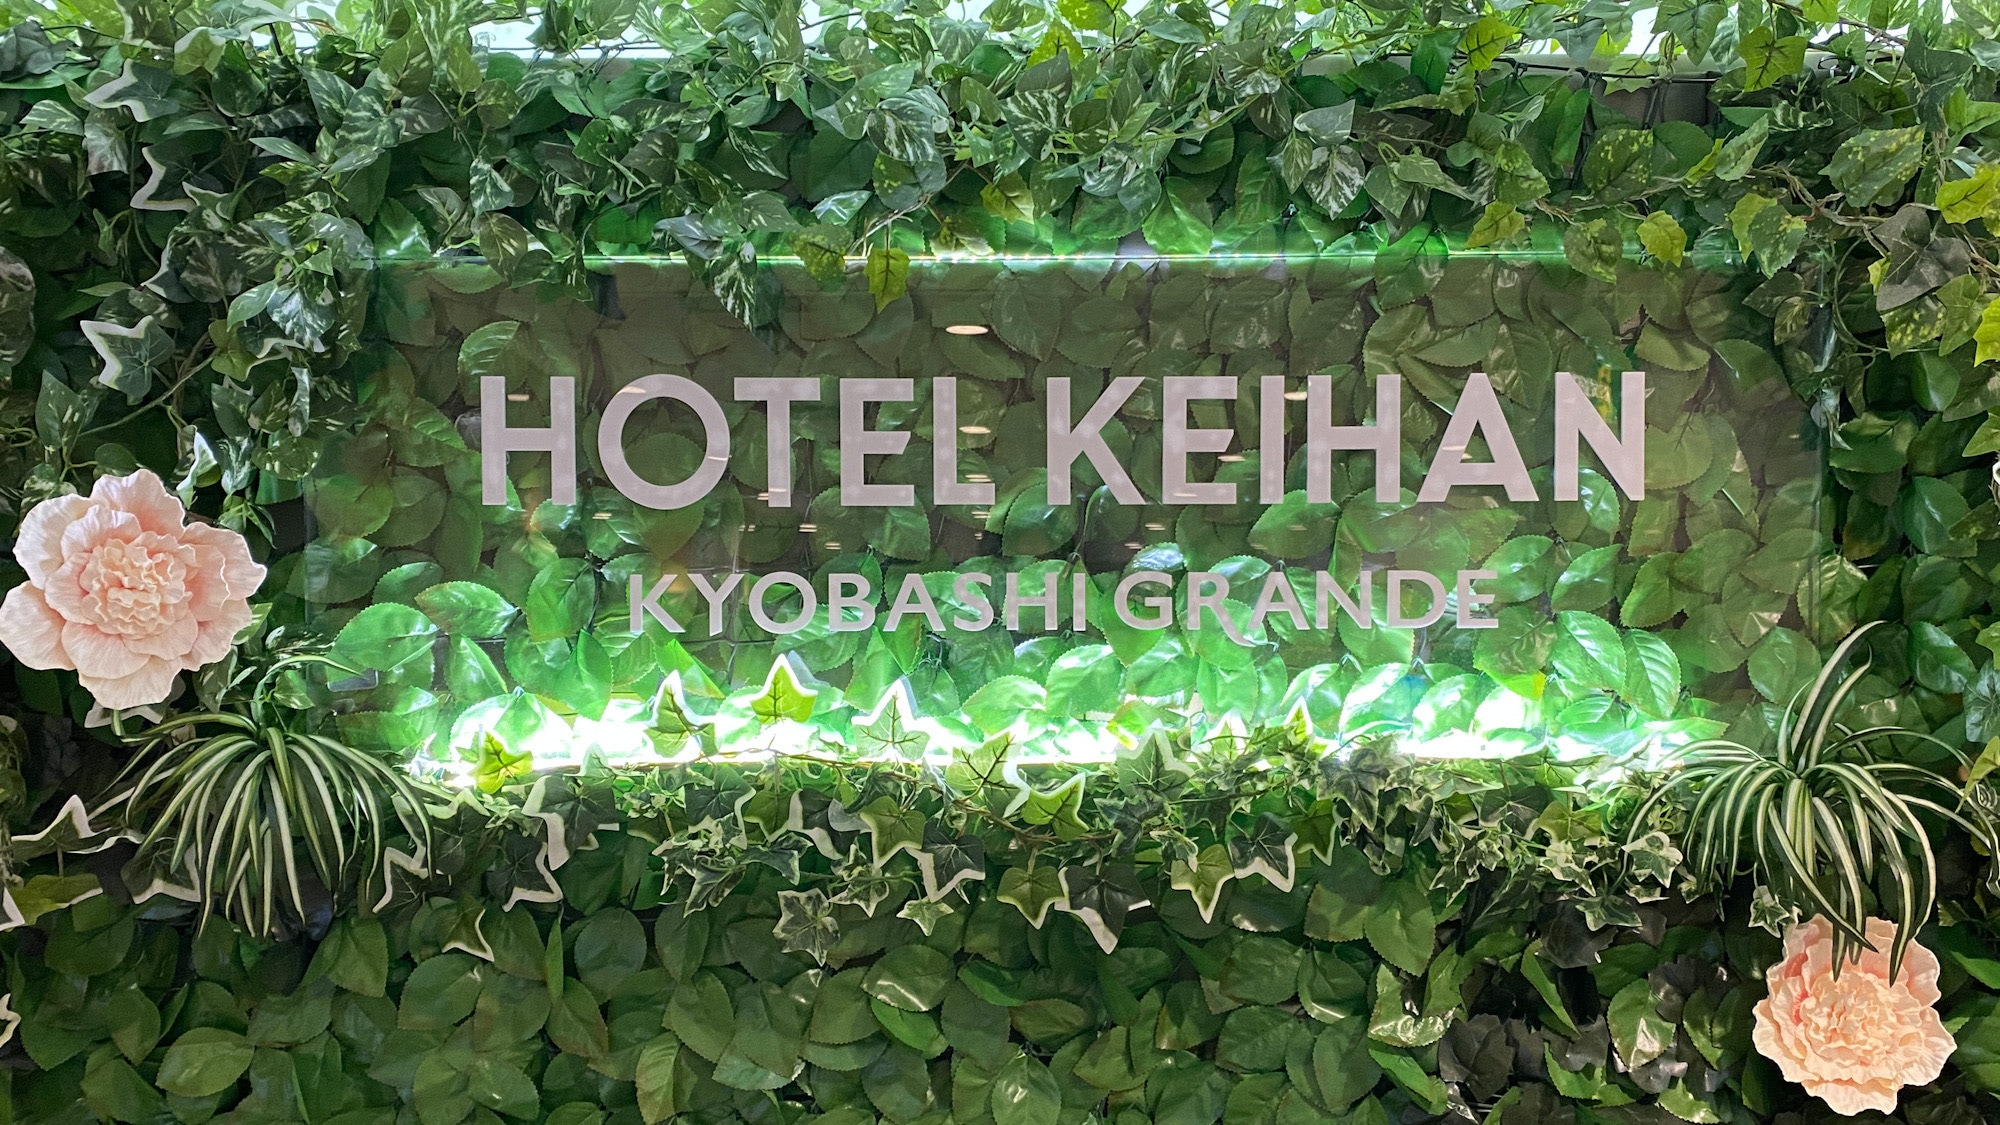 Hotel Keihan Kyobashi Grande